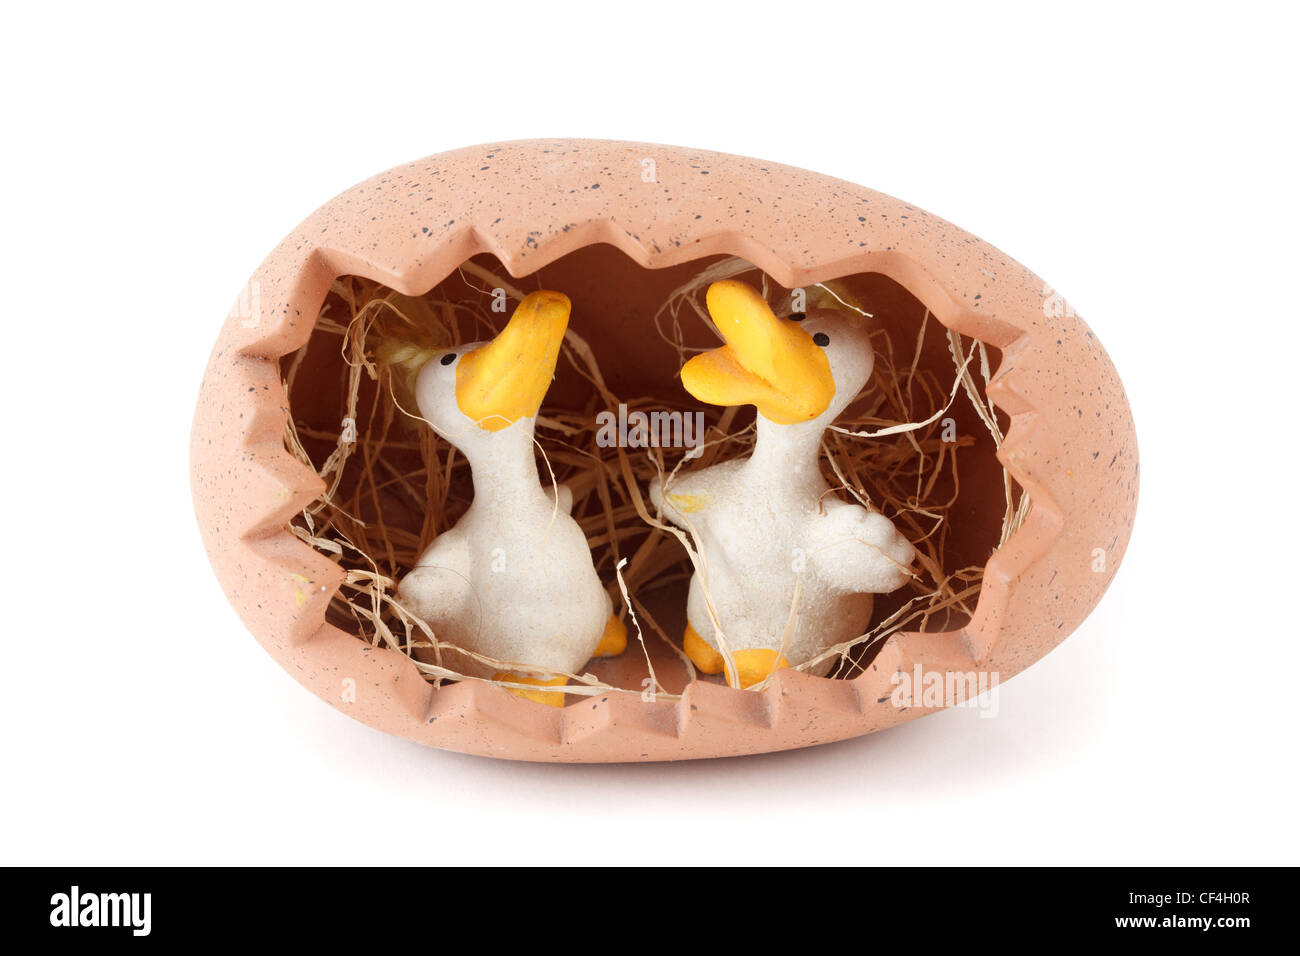 Tonspielsachen. Zwei Ente im Nest in Form von Eiern. Isoliert auf weißem Hintergrund. Stockfoto